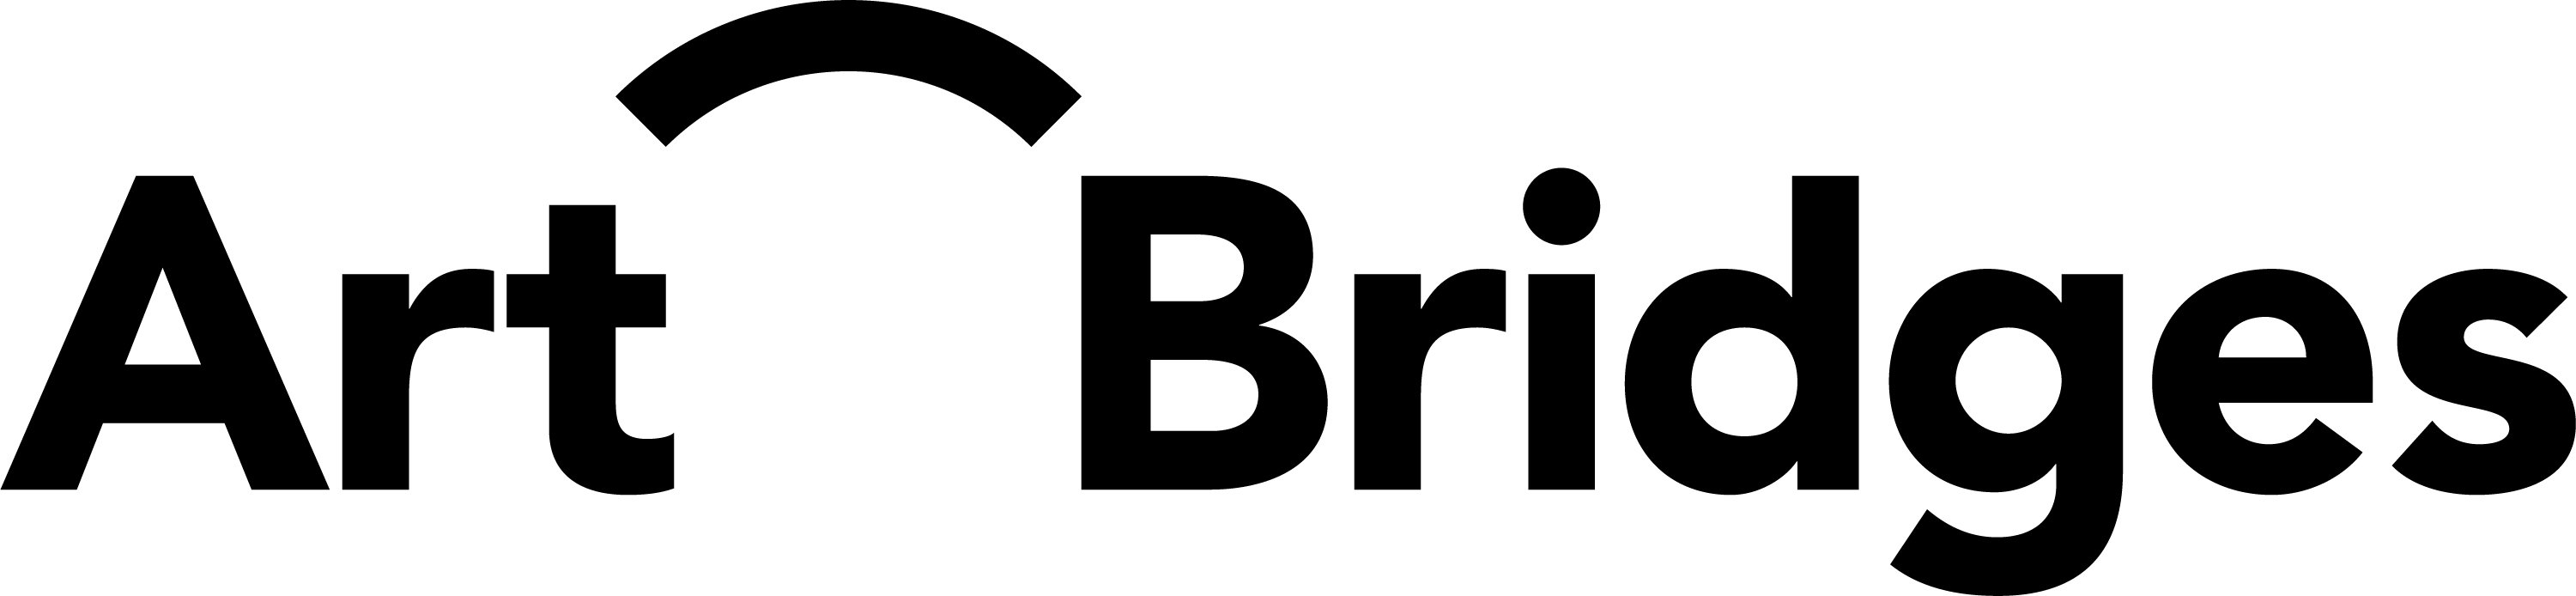 Art Bridges logo black